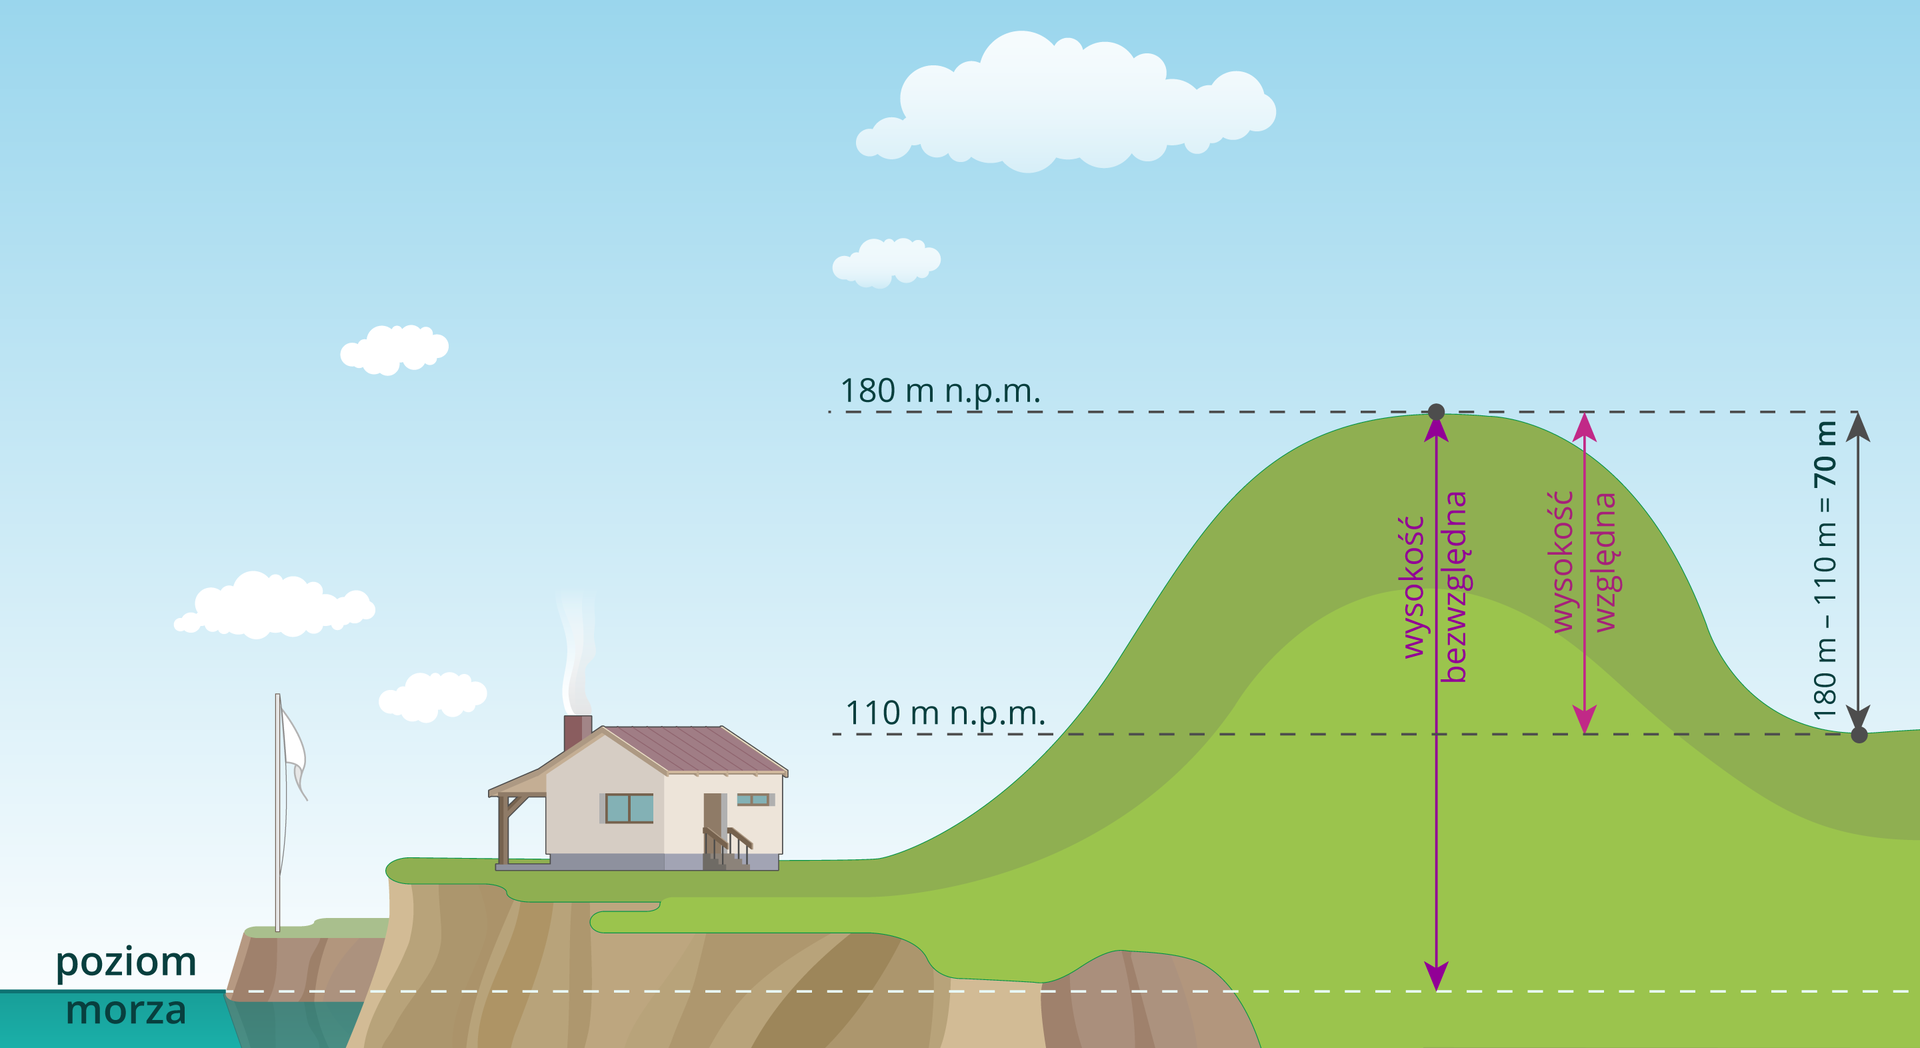 Ilustracja przedstawia sposób pomiaru wysokości względnej i bezwzględnej wzgórza. Na ilustracji pokazano wzgórze, po prawej stronie stoku wzgórza znajduje się kotlina, po lewej stronie stoku wzgórza znajduje się podnóże, na którym stoi dom. Na lewo od domu, poniżej podnóża góry, zaznaczono linią poziom morza. Linia poziomu morza biegnie przez całą ilustrację. Na rysunku wzgórza zaznaczono wysokość bezwzględną, która jest poprowadzona od linii poziomu morza do szczytu góry i wynosi tutaj sto osiemdziesiąt metrów nad poziomem morza. Wysokość bezwzględna od poziomu morza do podnóża wynosi sto dziesięć metrów nad poziomem morza. Wysokość względną wzgórza obliczmy, odejmując od wysokości bezwzględnej wzgórza, sto osiemdziesiąt metrów nad poziomem morza, m.n.p.m wysokość bezwzględną podnóża, sto dziesięć metrów nad poziomem morza. Otrzymujemy wynik siedemdziesiąt metrów wysokości względnej wzgórza.